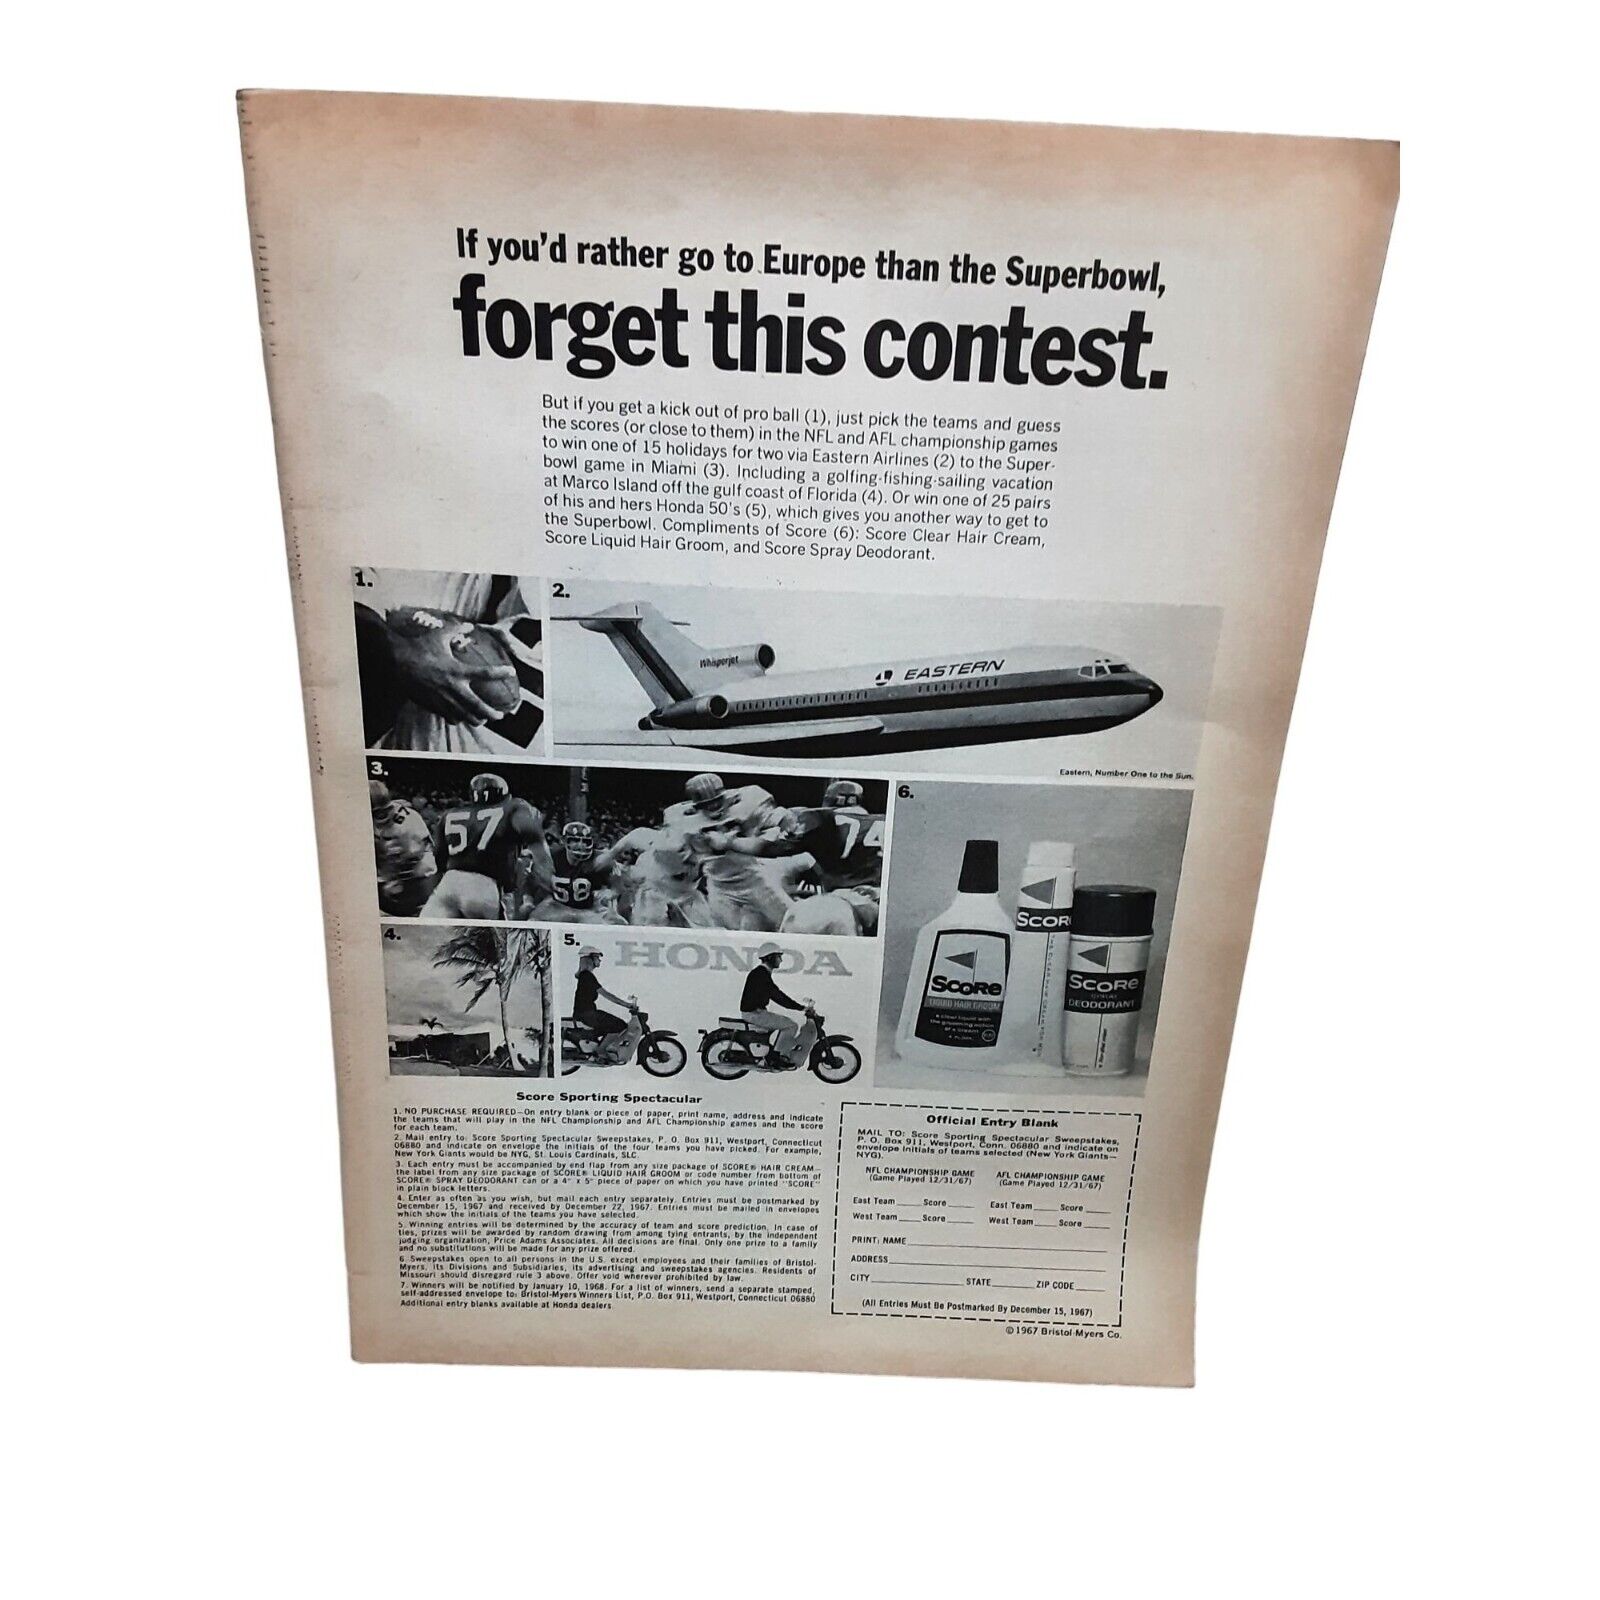 1967 Score Deodorant vintage Original Print ad